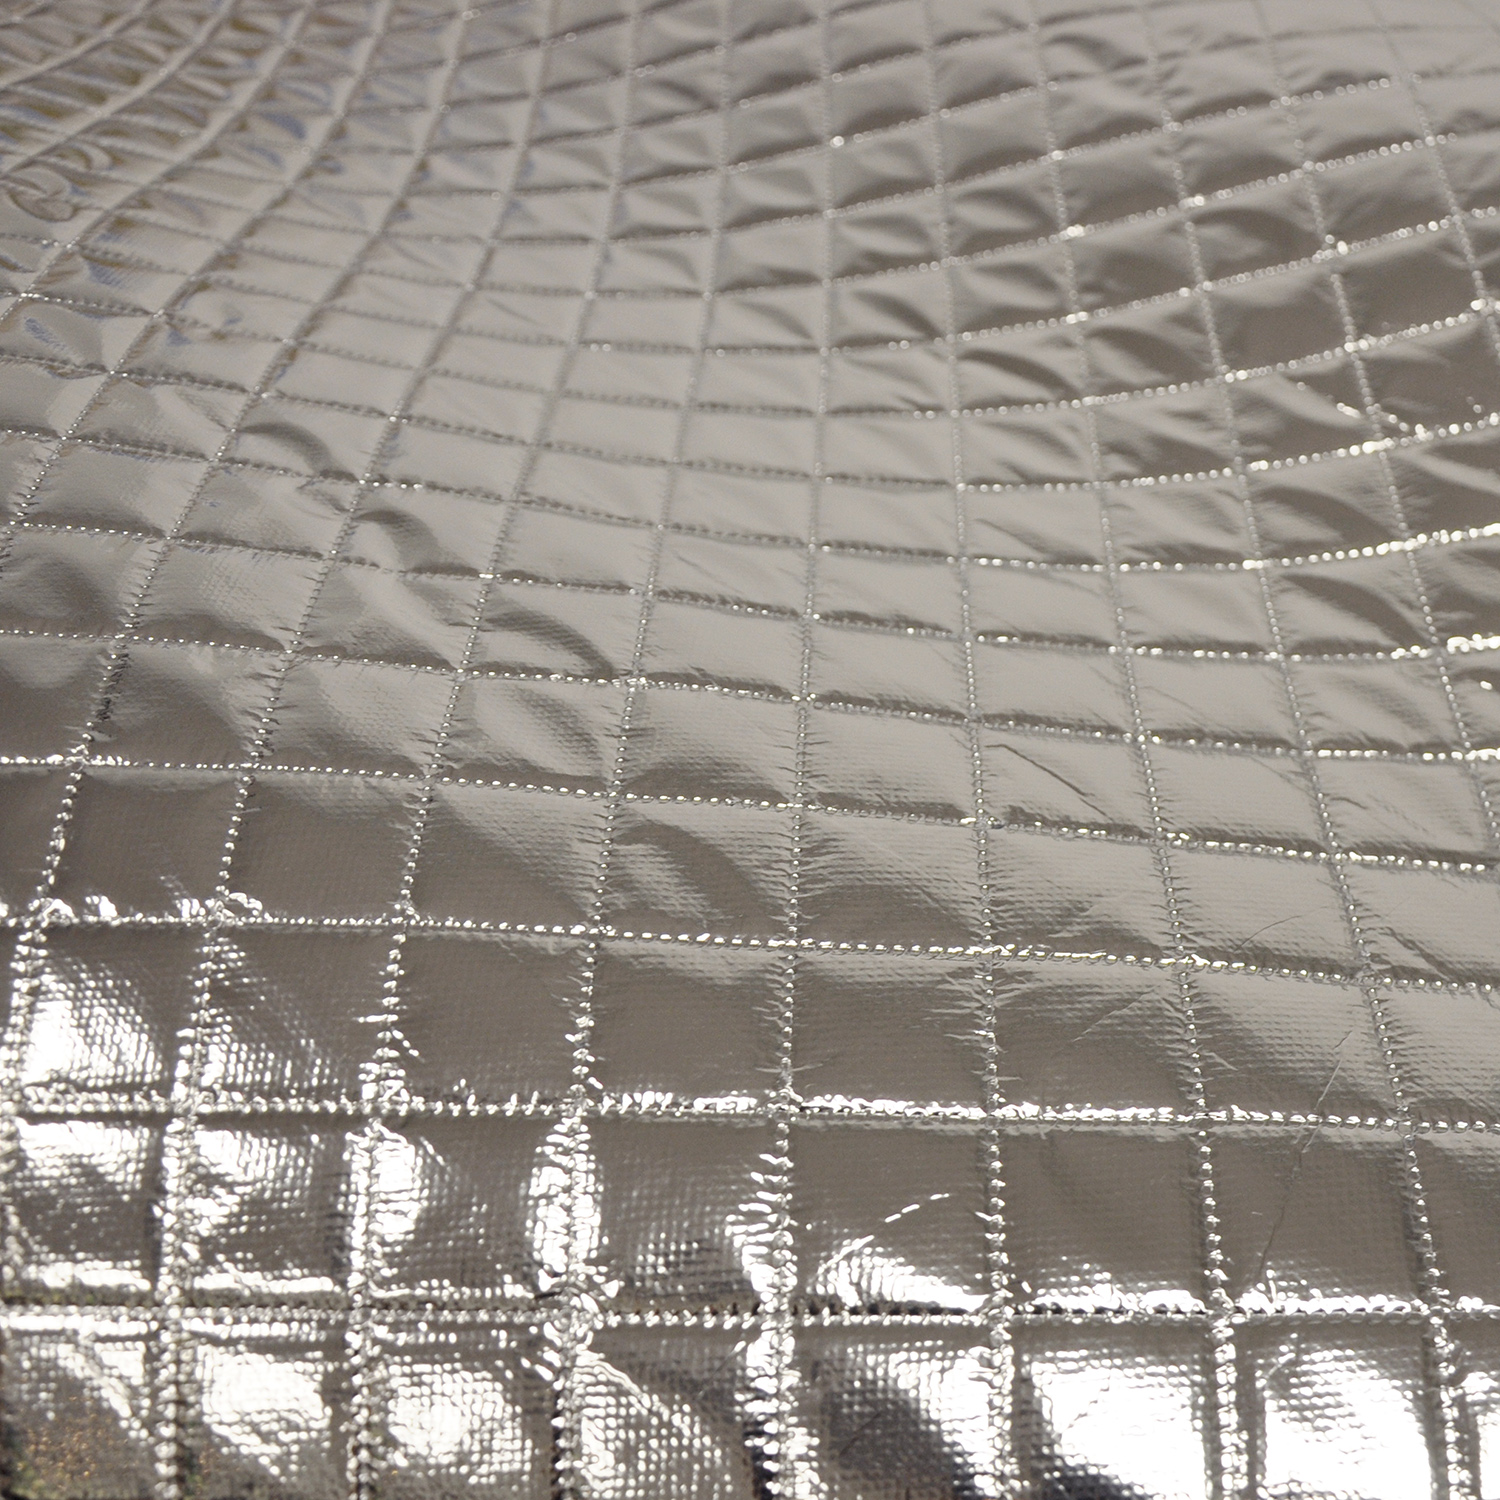 Aluminor Cushioned Material